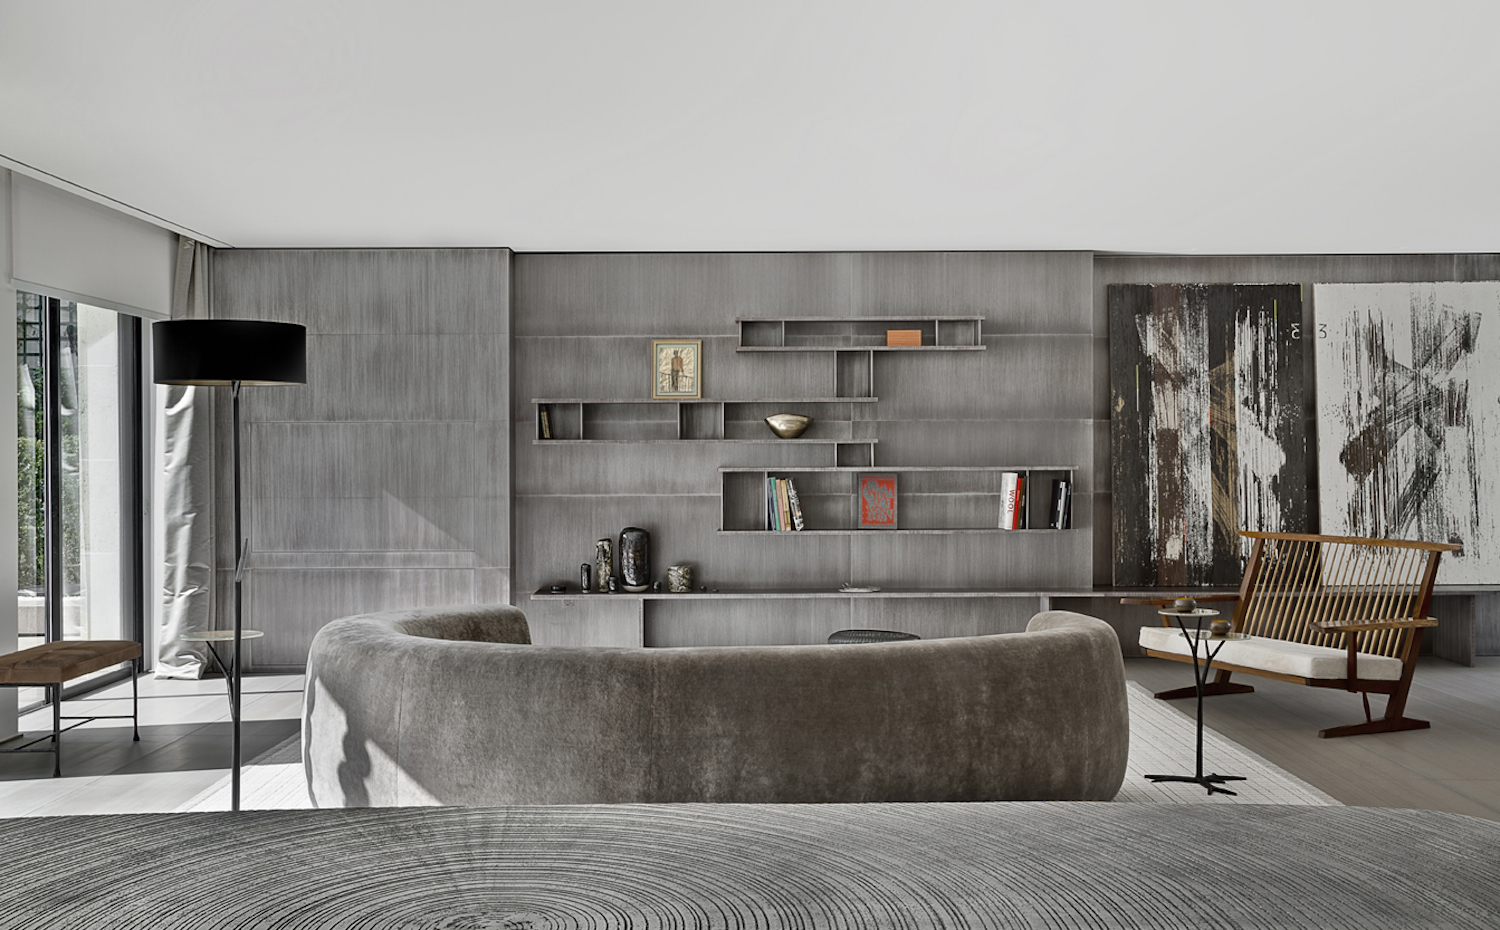 TAG61. Un sofá semicircular preside el salón. Su textura aterciopelada dialoga con la materialidad del sobre madera de la mesa, en primer término, y el panelado del mueble de pared al fondo